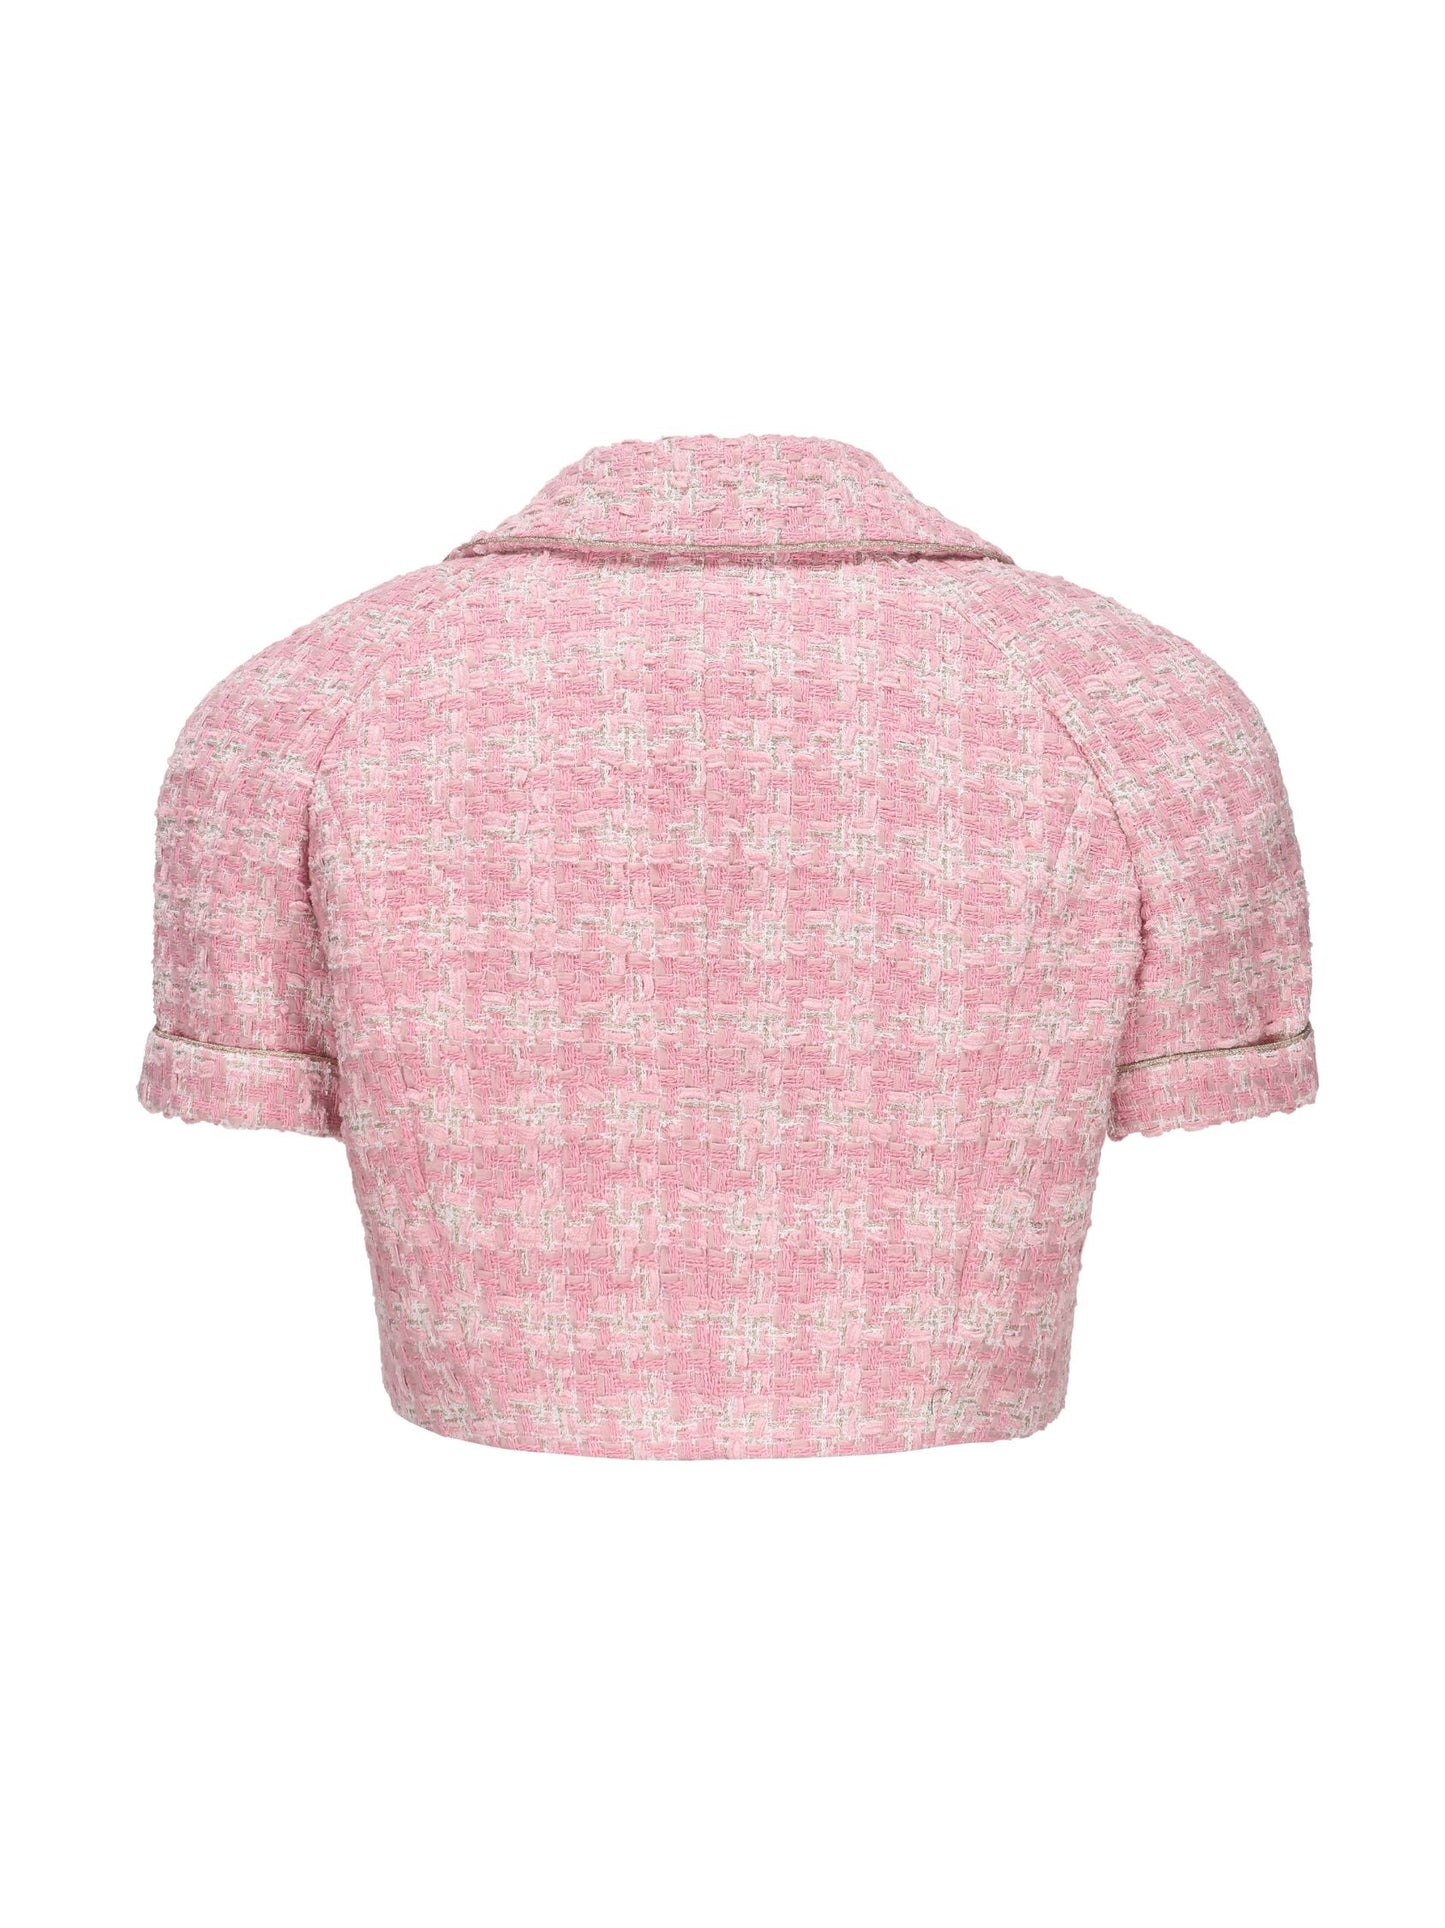 Chelsea Tweed Top  (Pink)